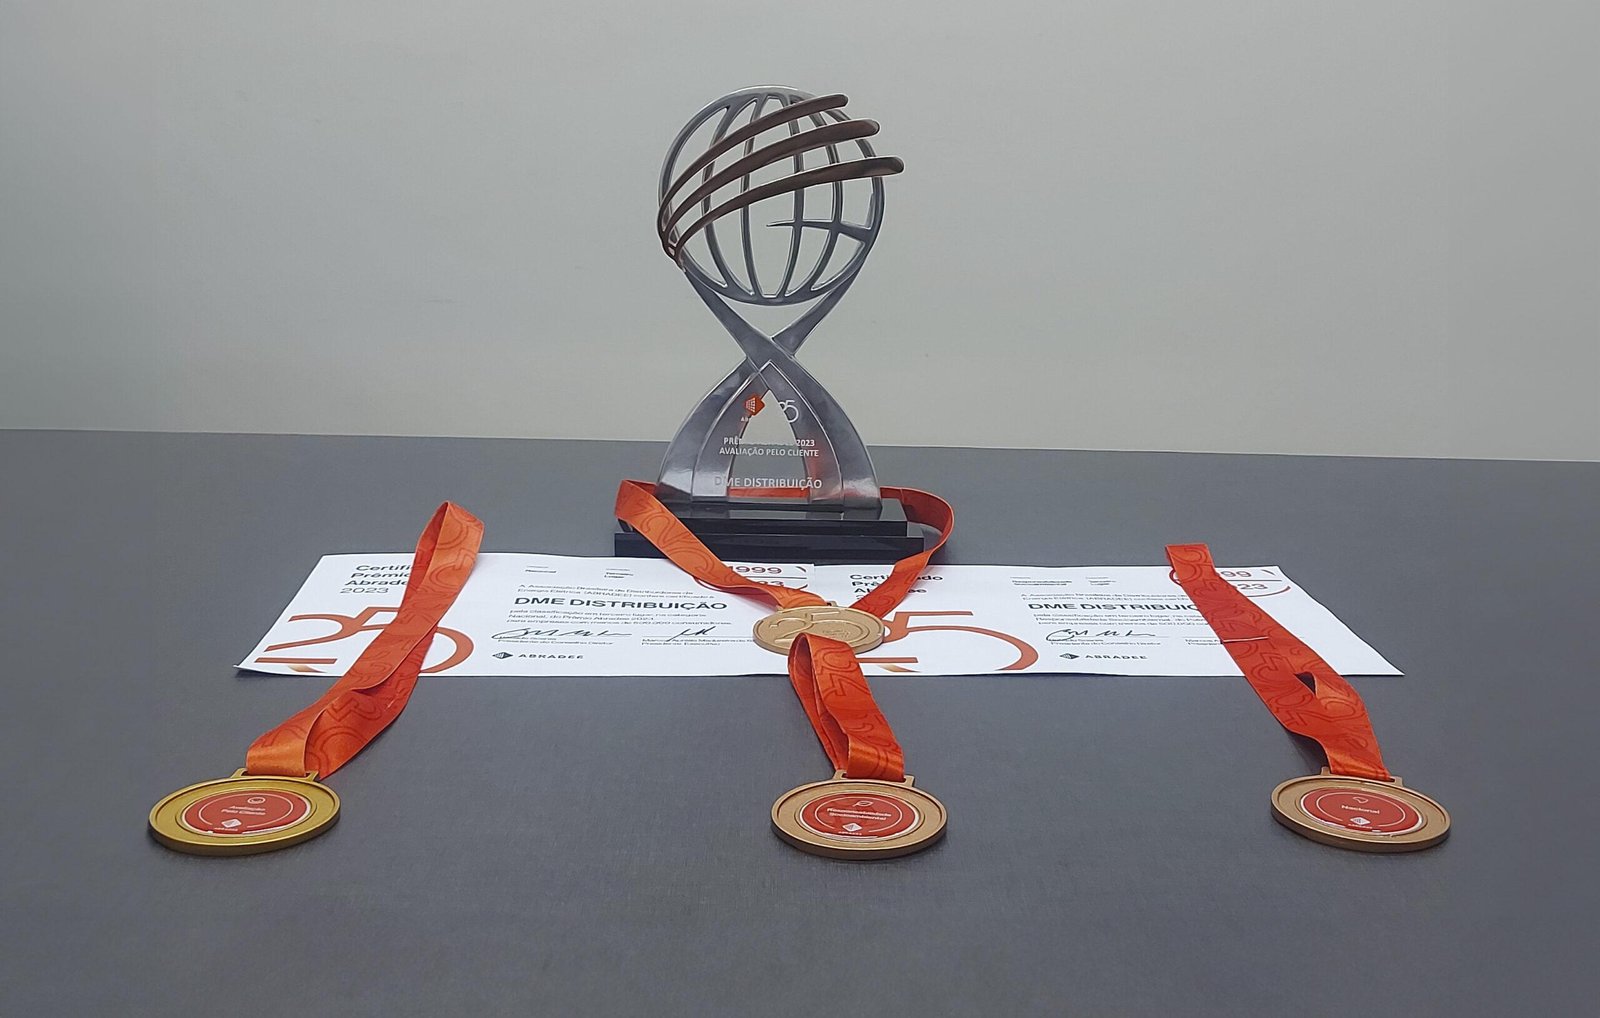 DMED conquista primeiro lugar na categoria Avaliação pelo Cliente do Prêmio ABRADEE 2023